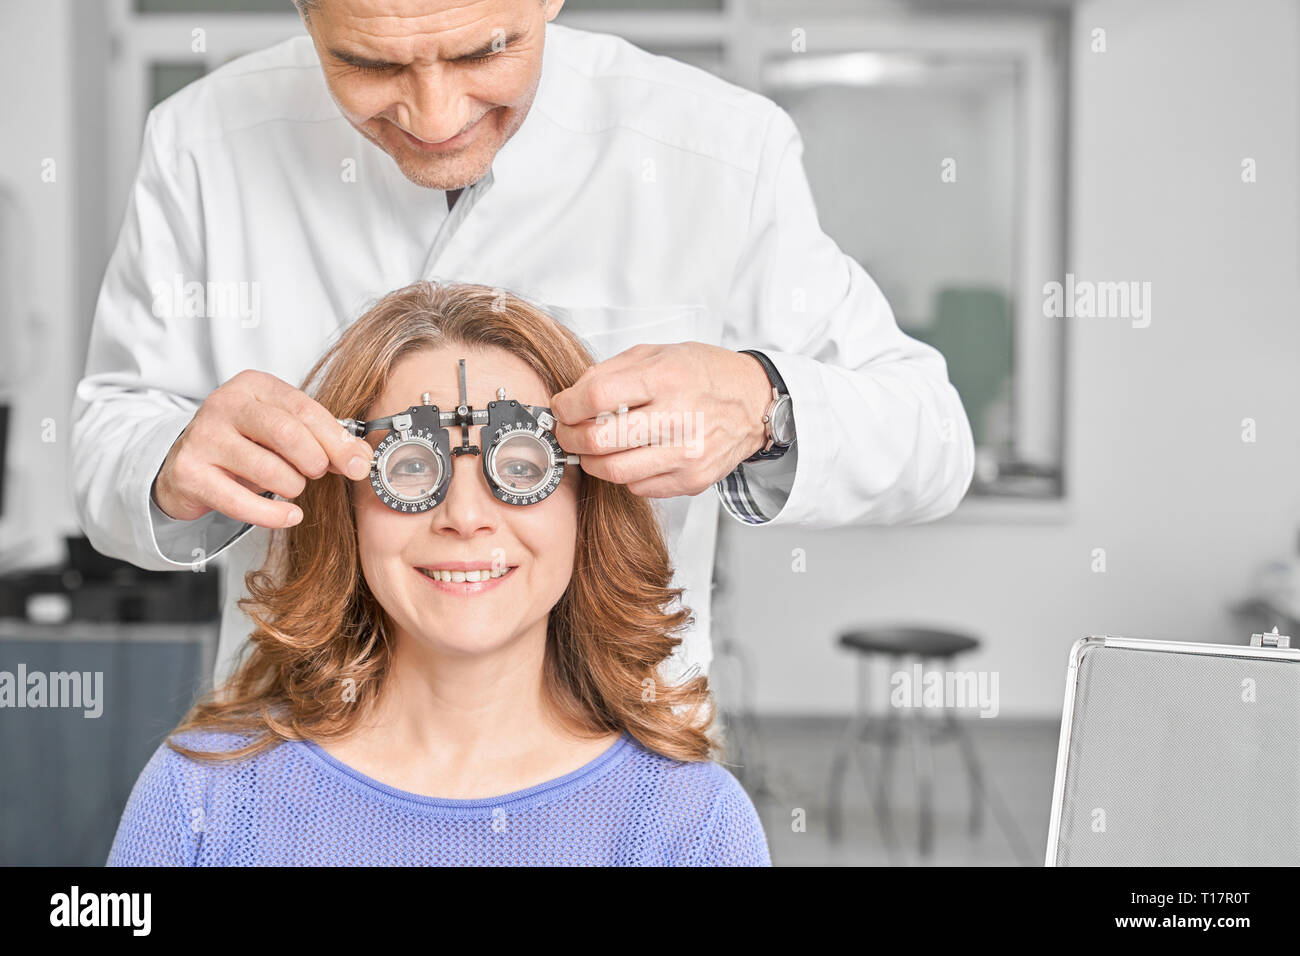 Arzt, Augenarzt Untersuchung Sehvermögen des Patienten in der Klinik. Professionelle Augenarzt spezielle Ausrüstung, Frau Test tragen eine Brille. Konzept der Sehkraft Korrektur. Stockfoto